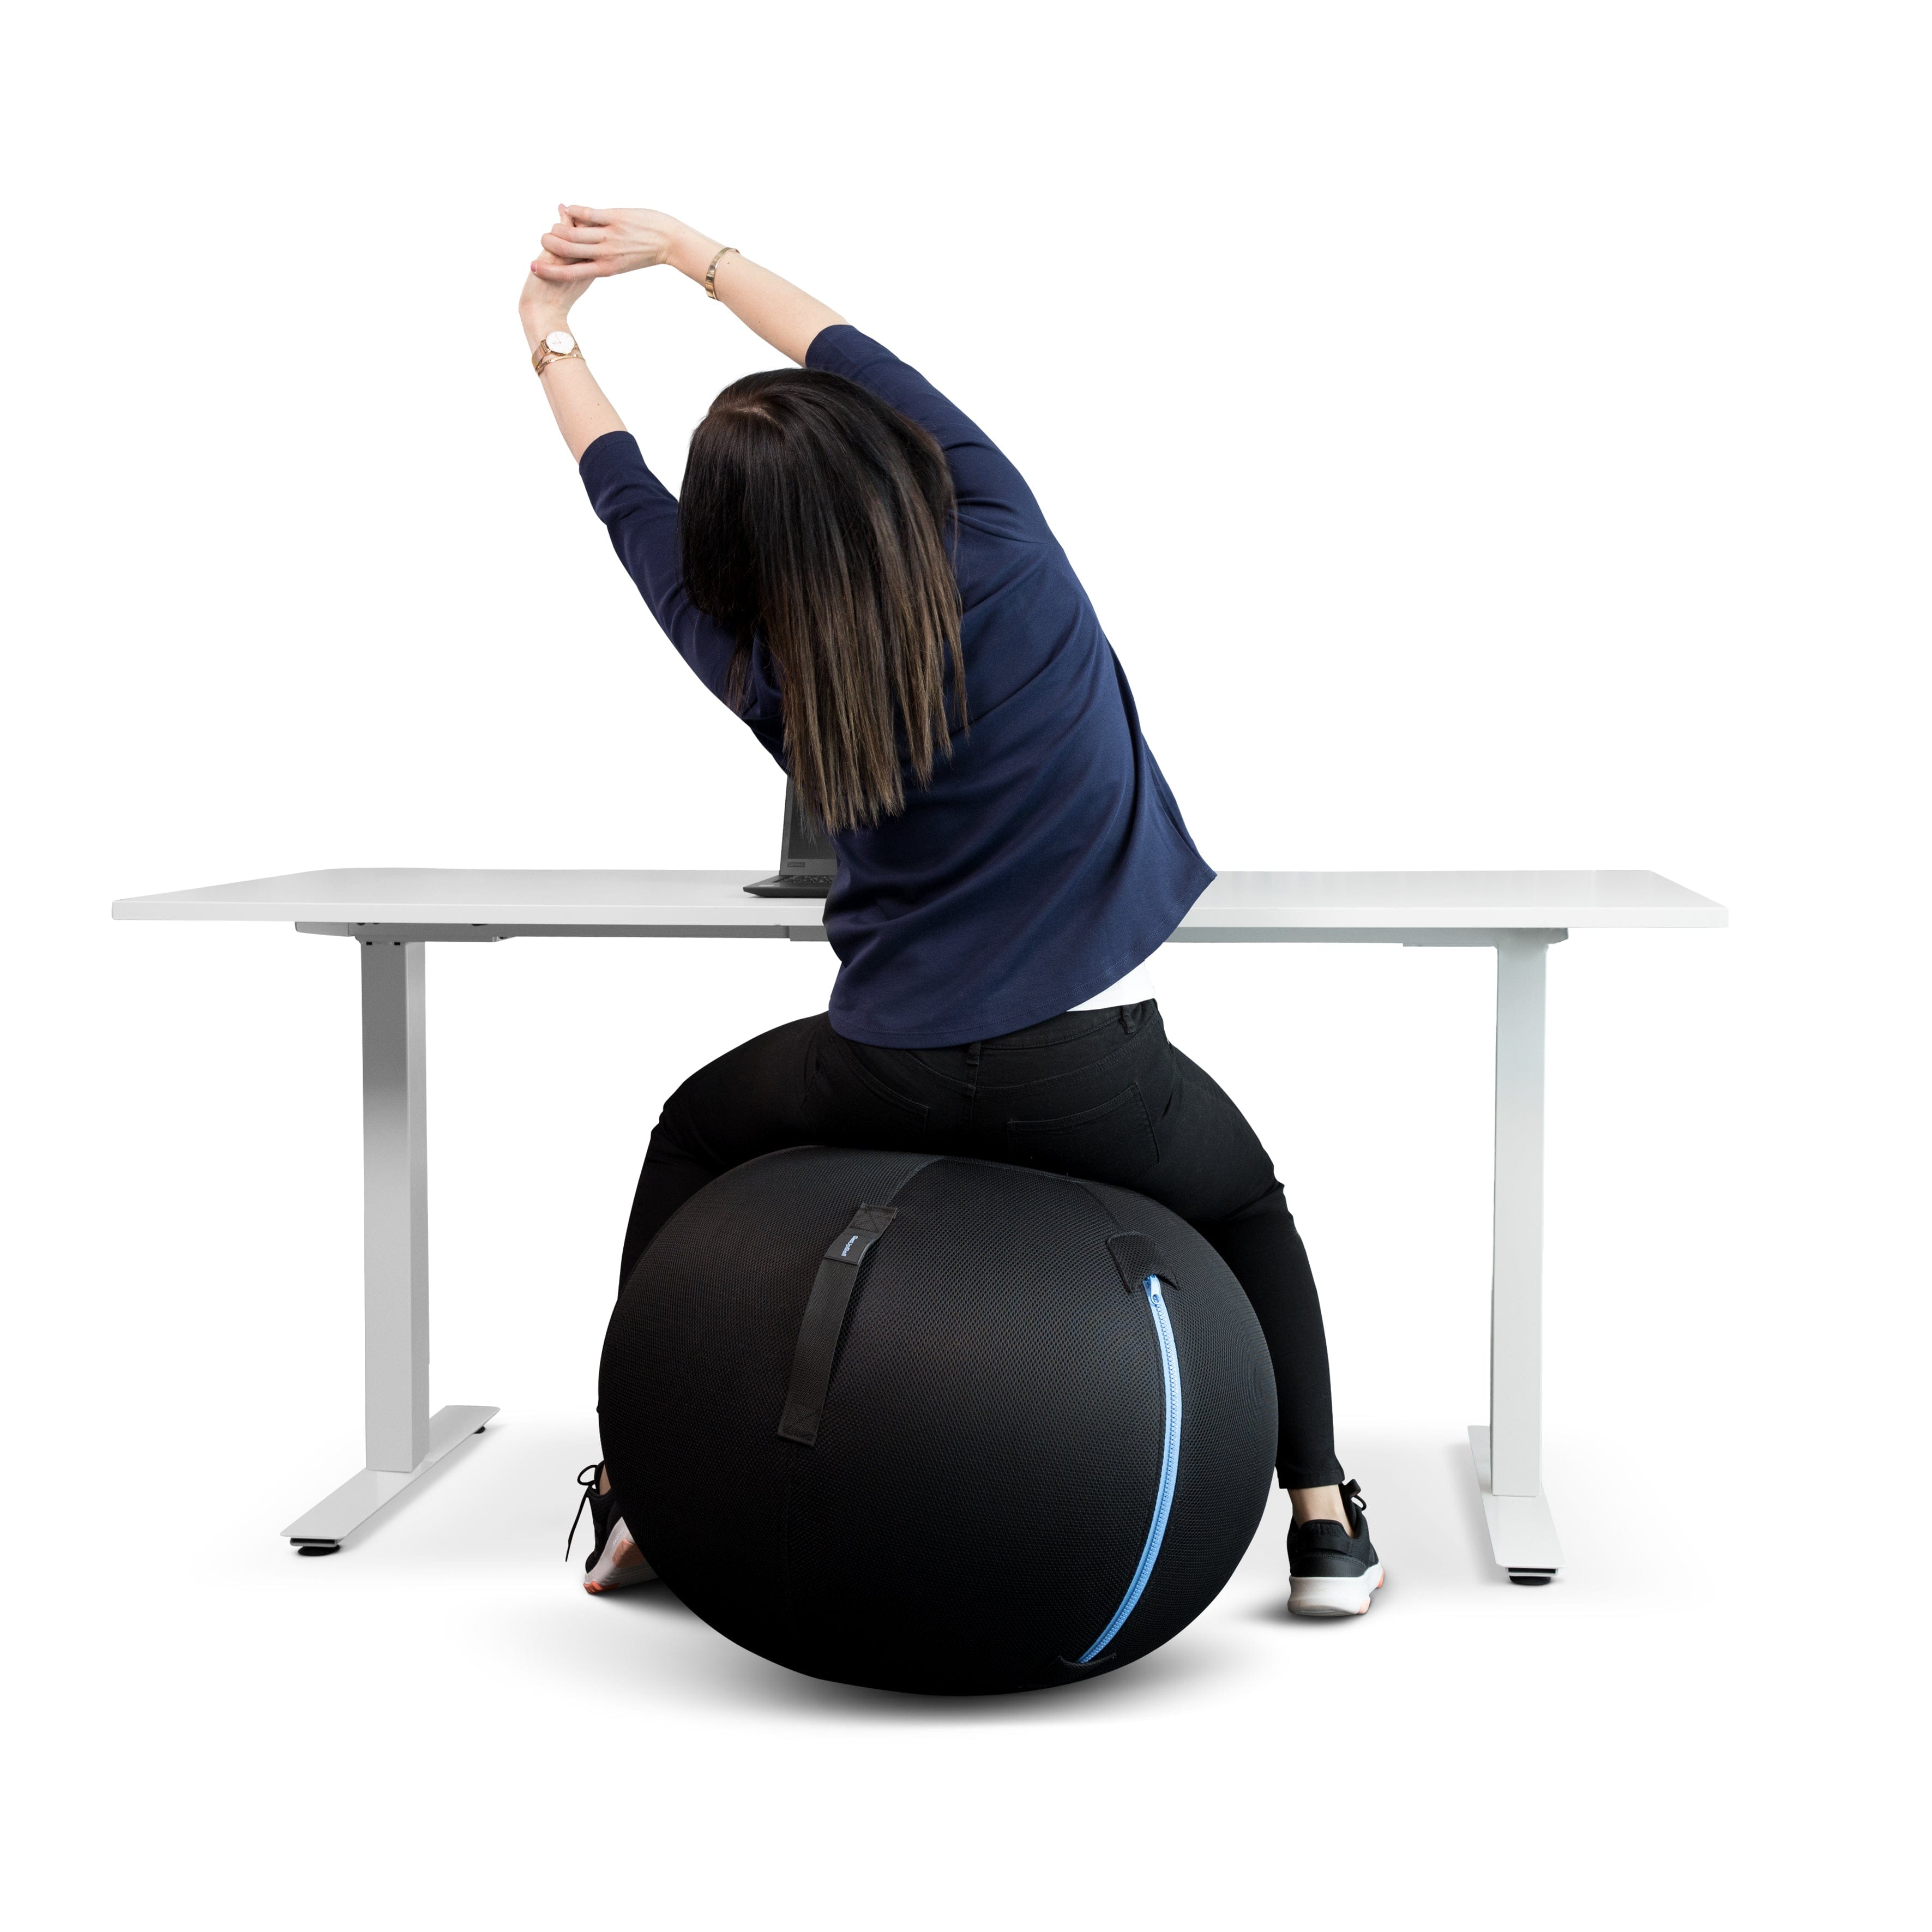  GetUpBall (Stor) - Aktiva stolar och sitsar, koncentrationssvårigheter, ryggbesvär, skolor, Stolar, trötthet - ErgoFinland